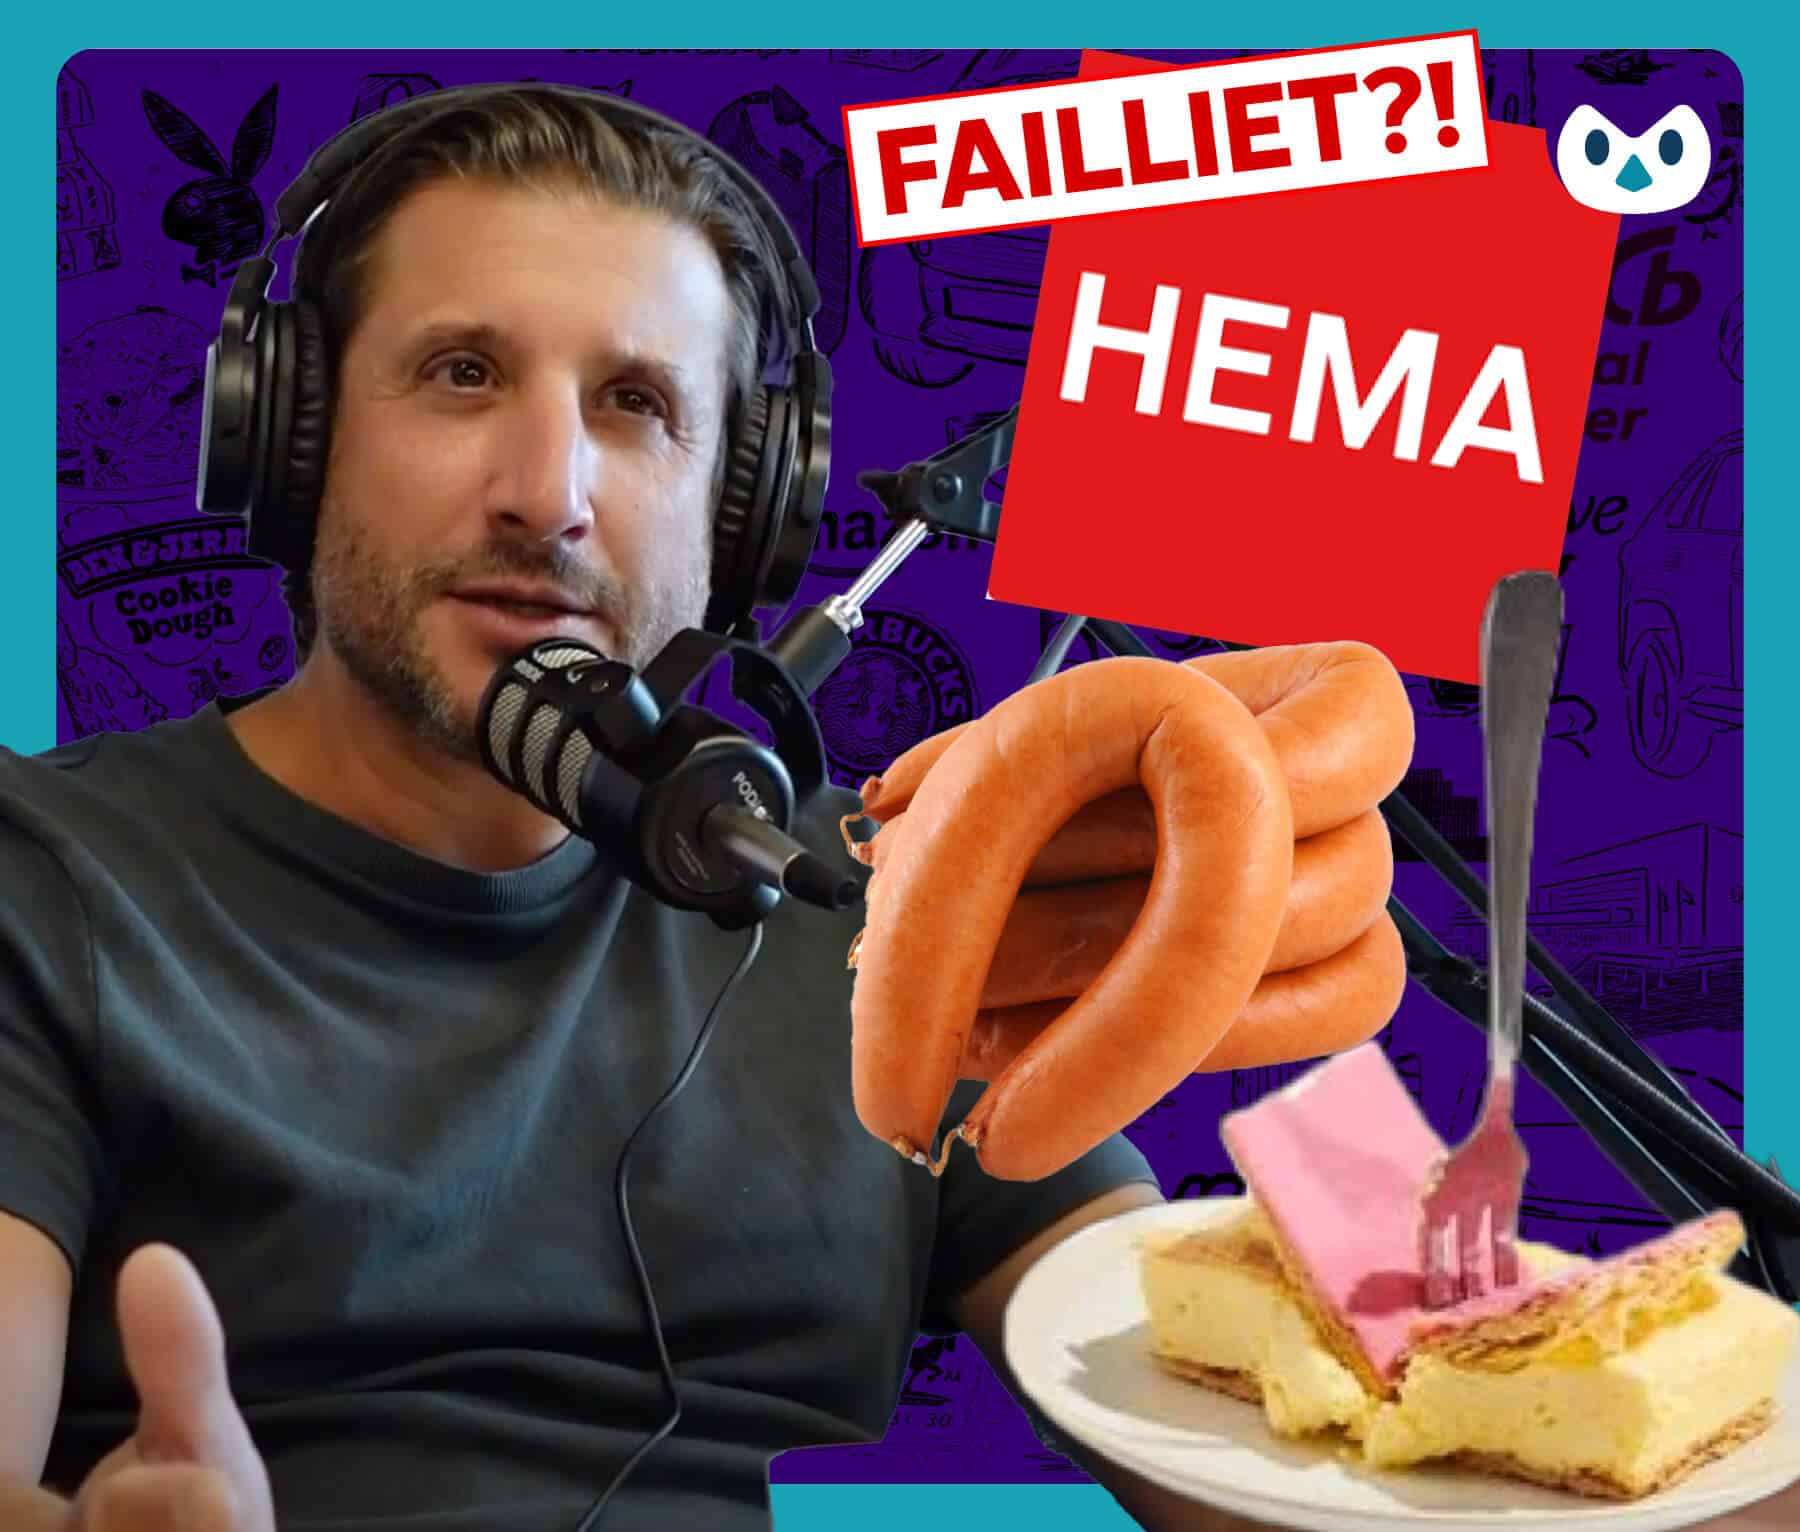 Bestaat HEMA over 3 jaar nog? Positionering HEMA doorgelicht – Podcast EP16